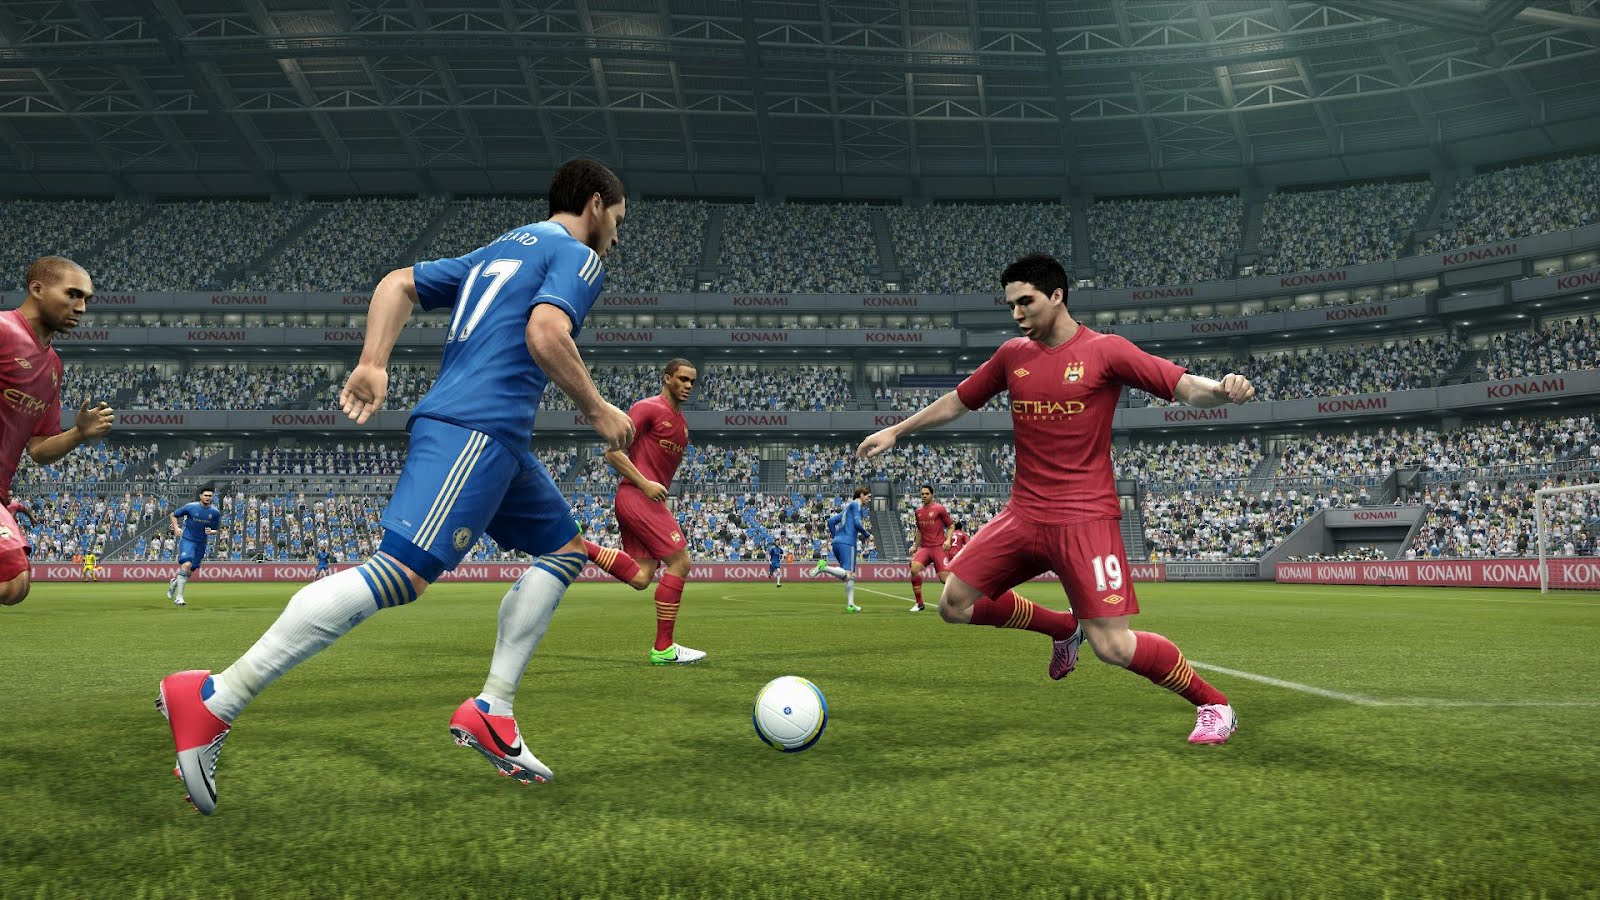 Télécharger Pro Evolution Soccer 2013 torrent pc games